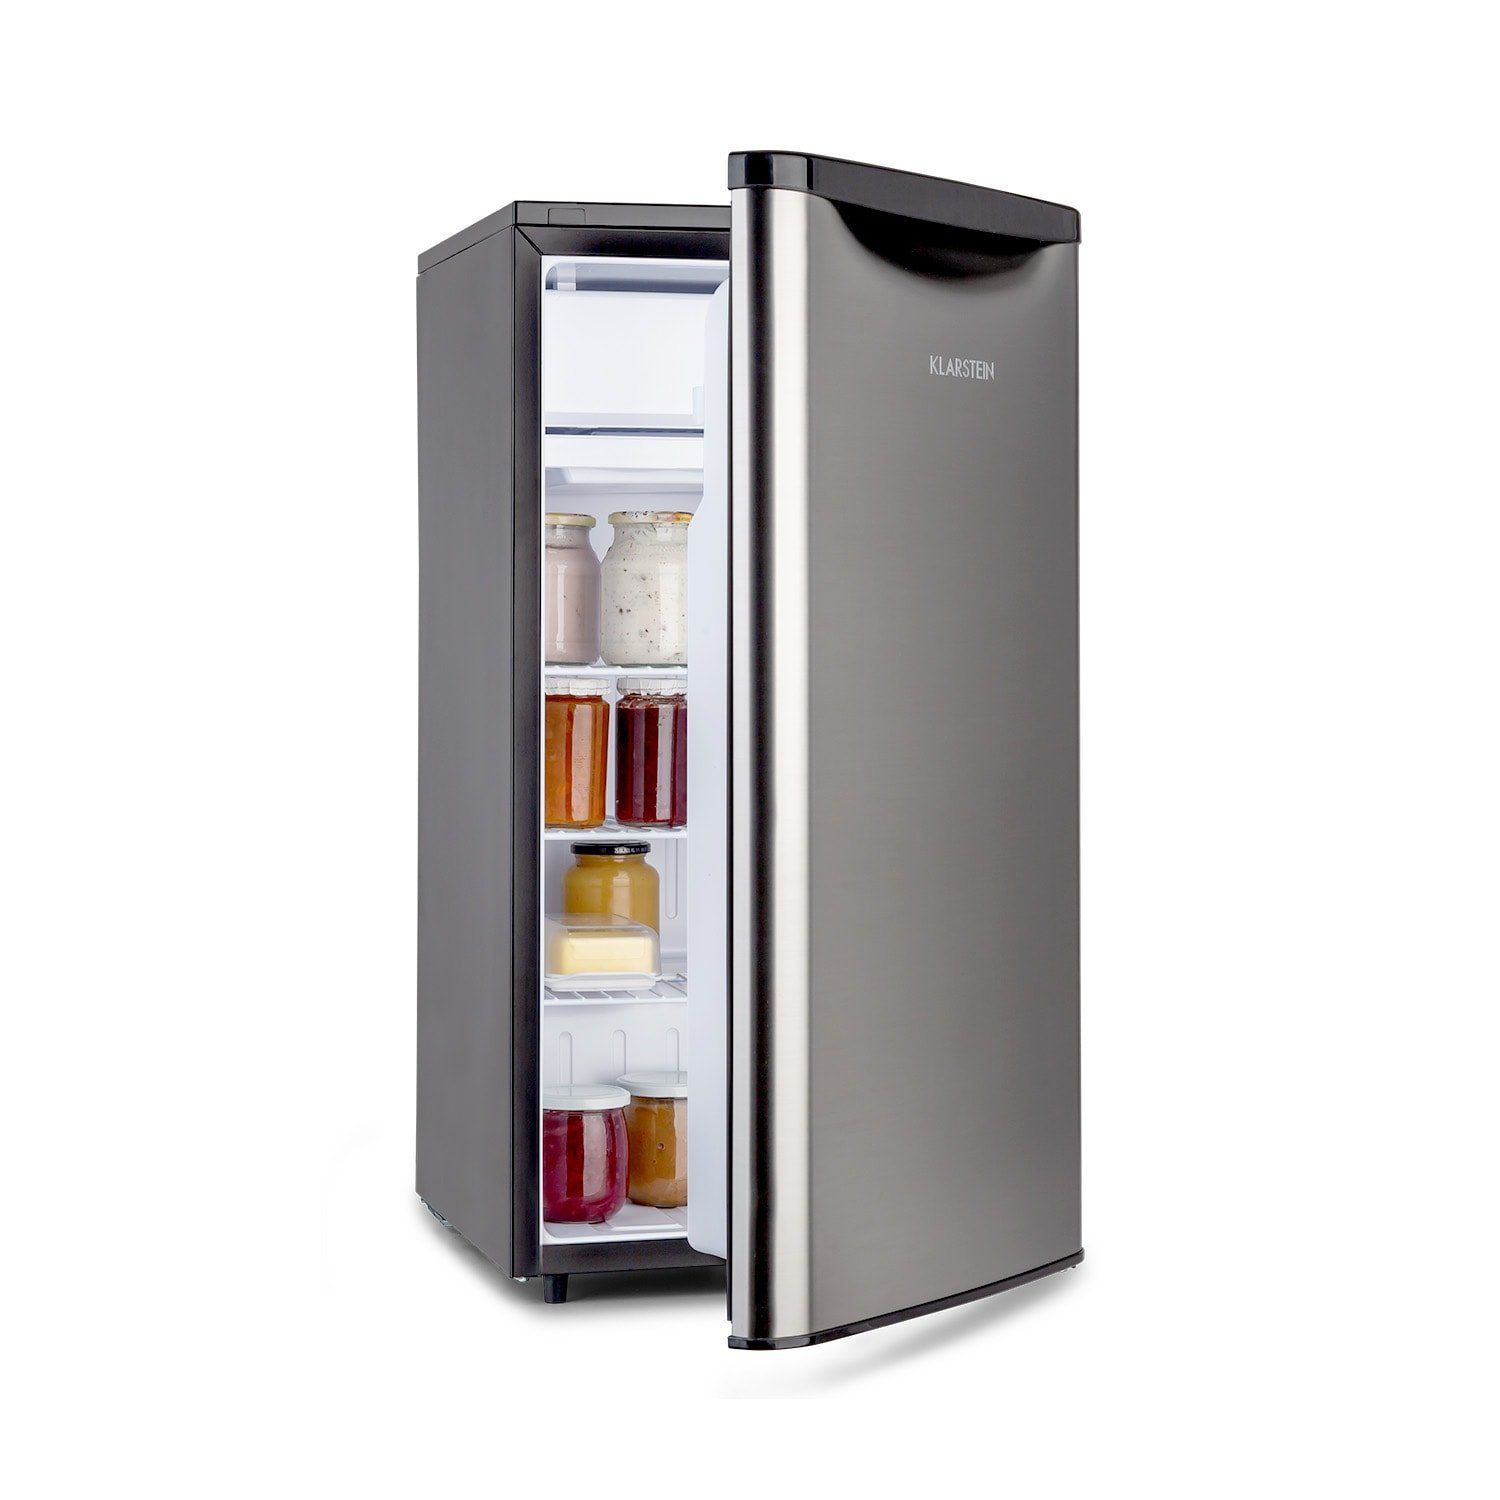 Klarstein Getränkekühlschrank Yummy Kühlschrank mit Gefrierfach 90 Liter  42dB 10035212, 85 cm hoch, 45 cm breit, Kühlschrank mit Gefrierfach Kühl  Gefrierkombination freistehend